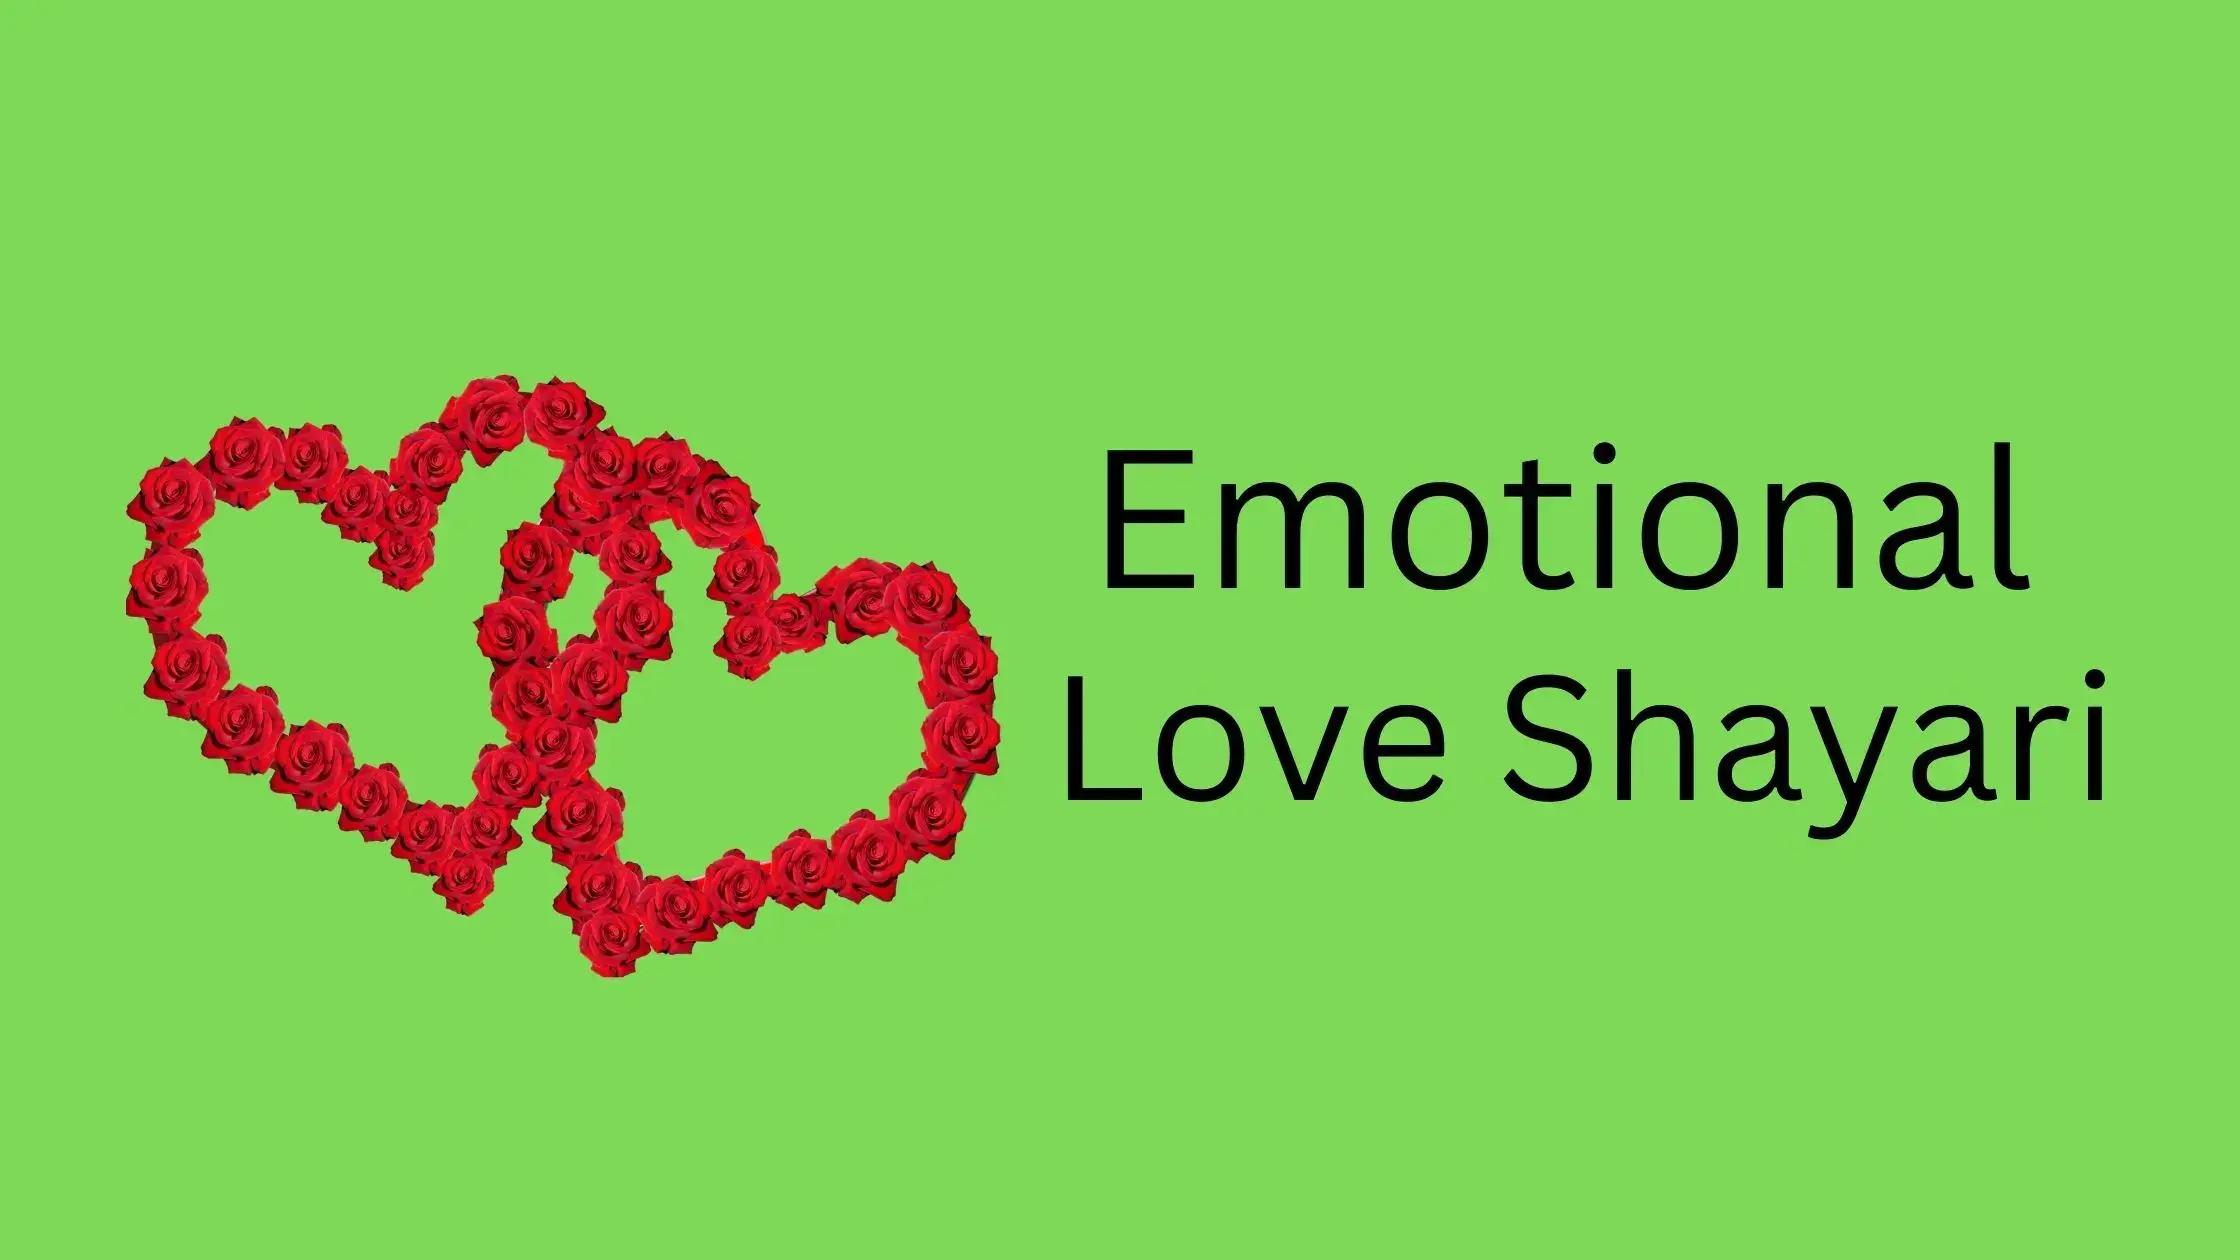 Emotional love shayari